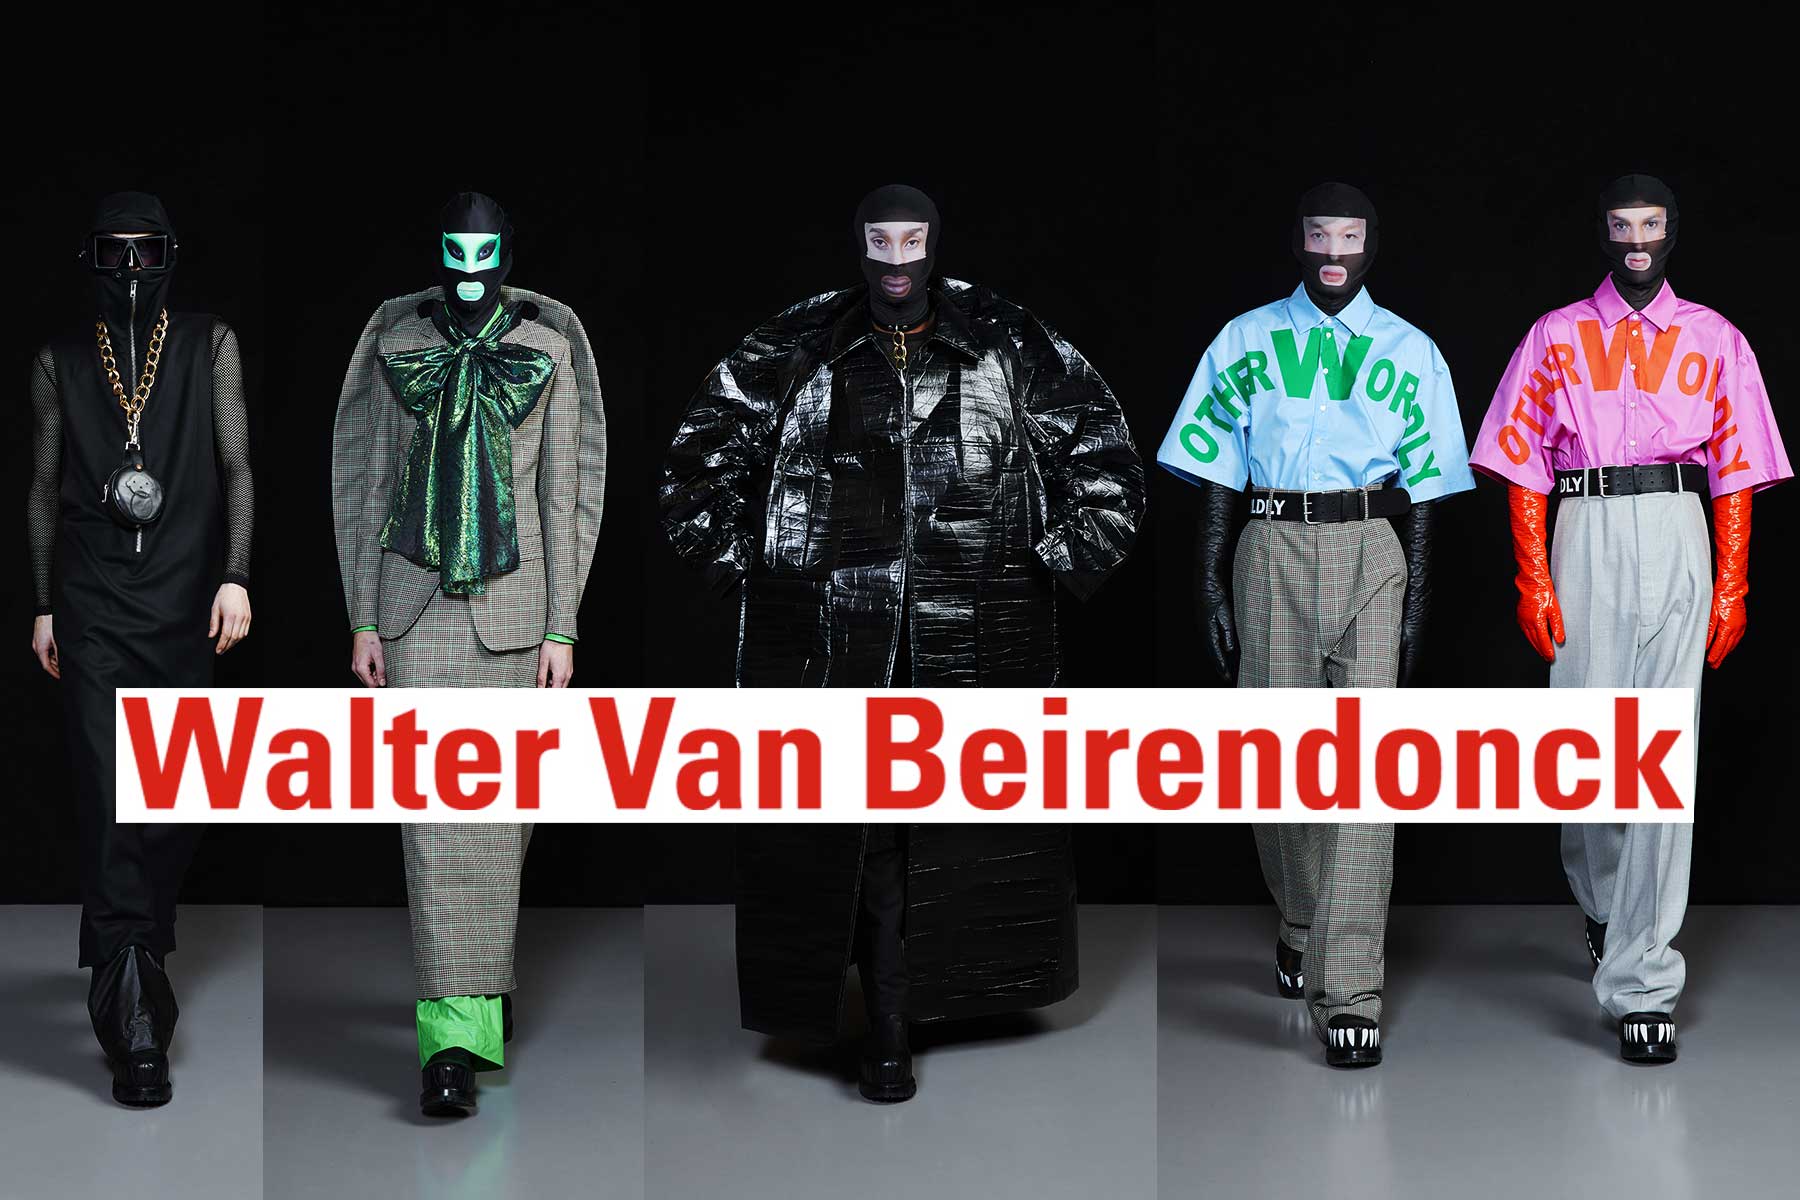 Walter Van Beirendonck - Official Website